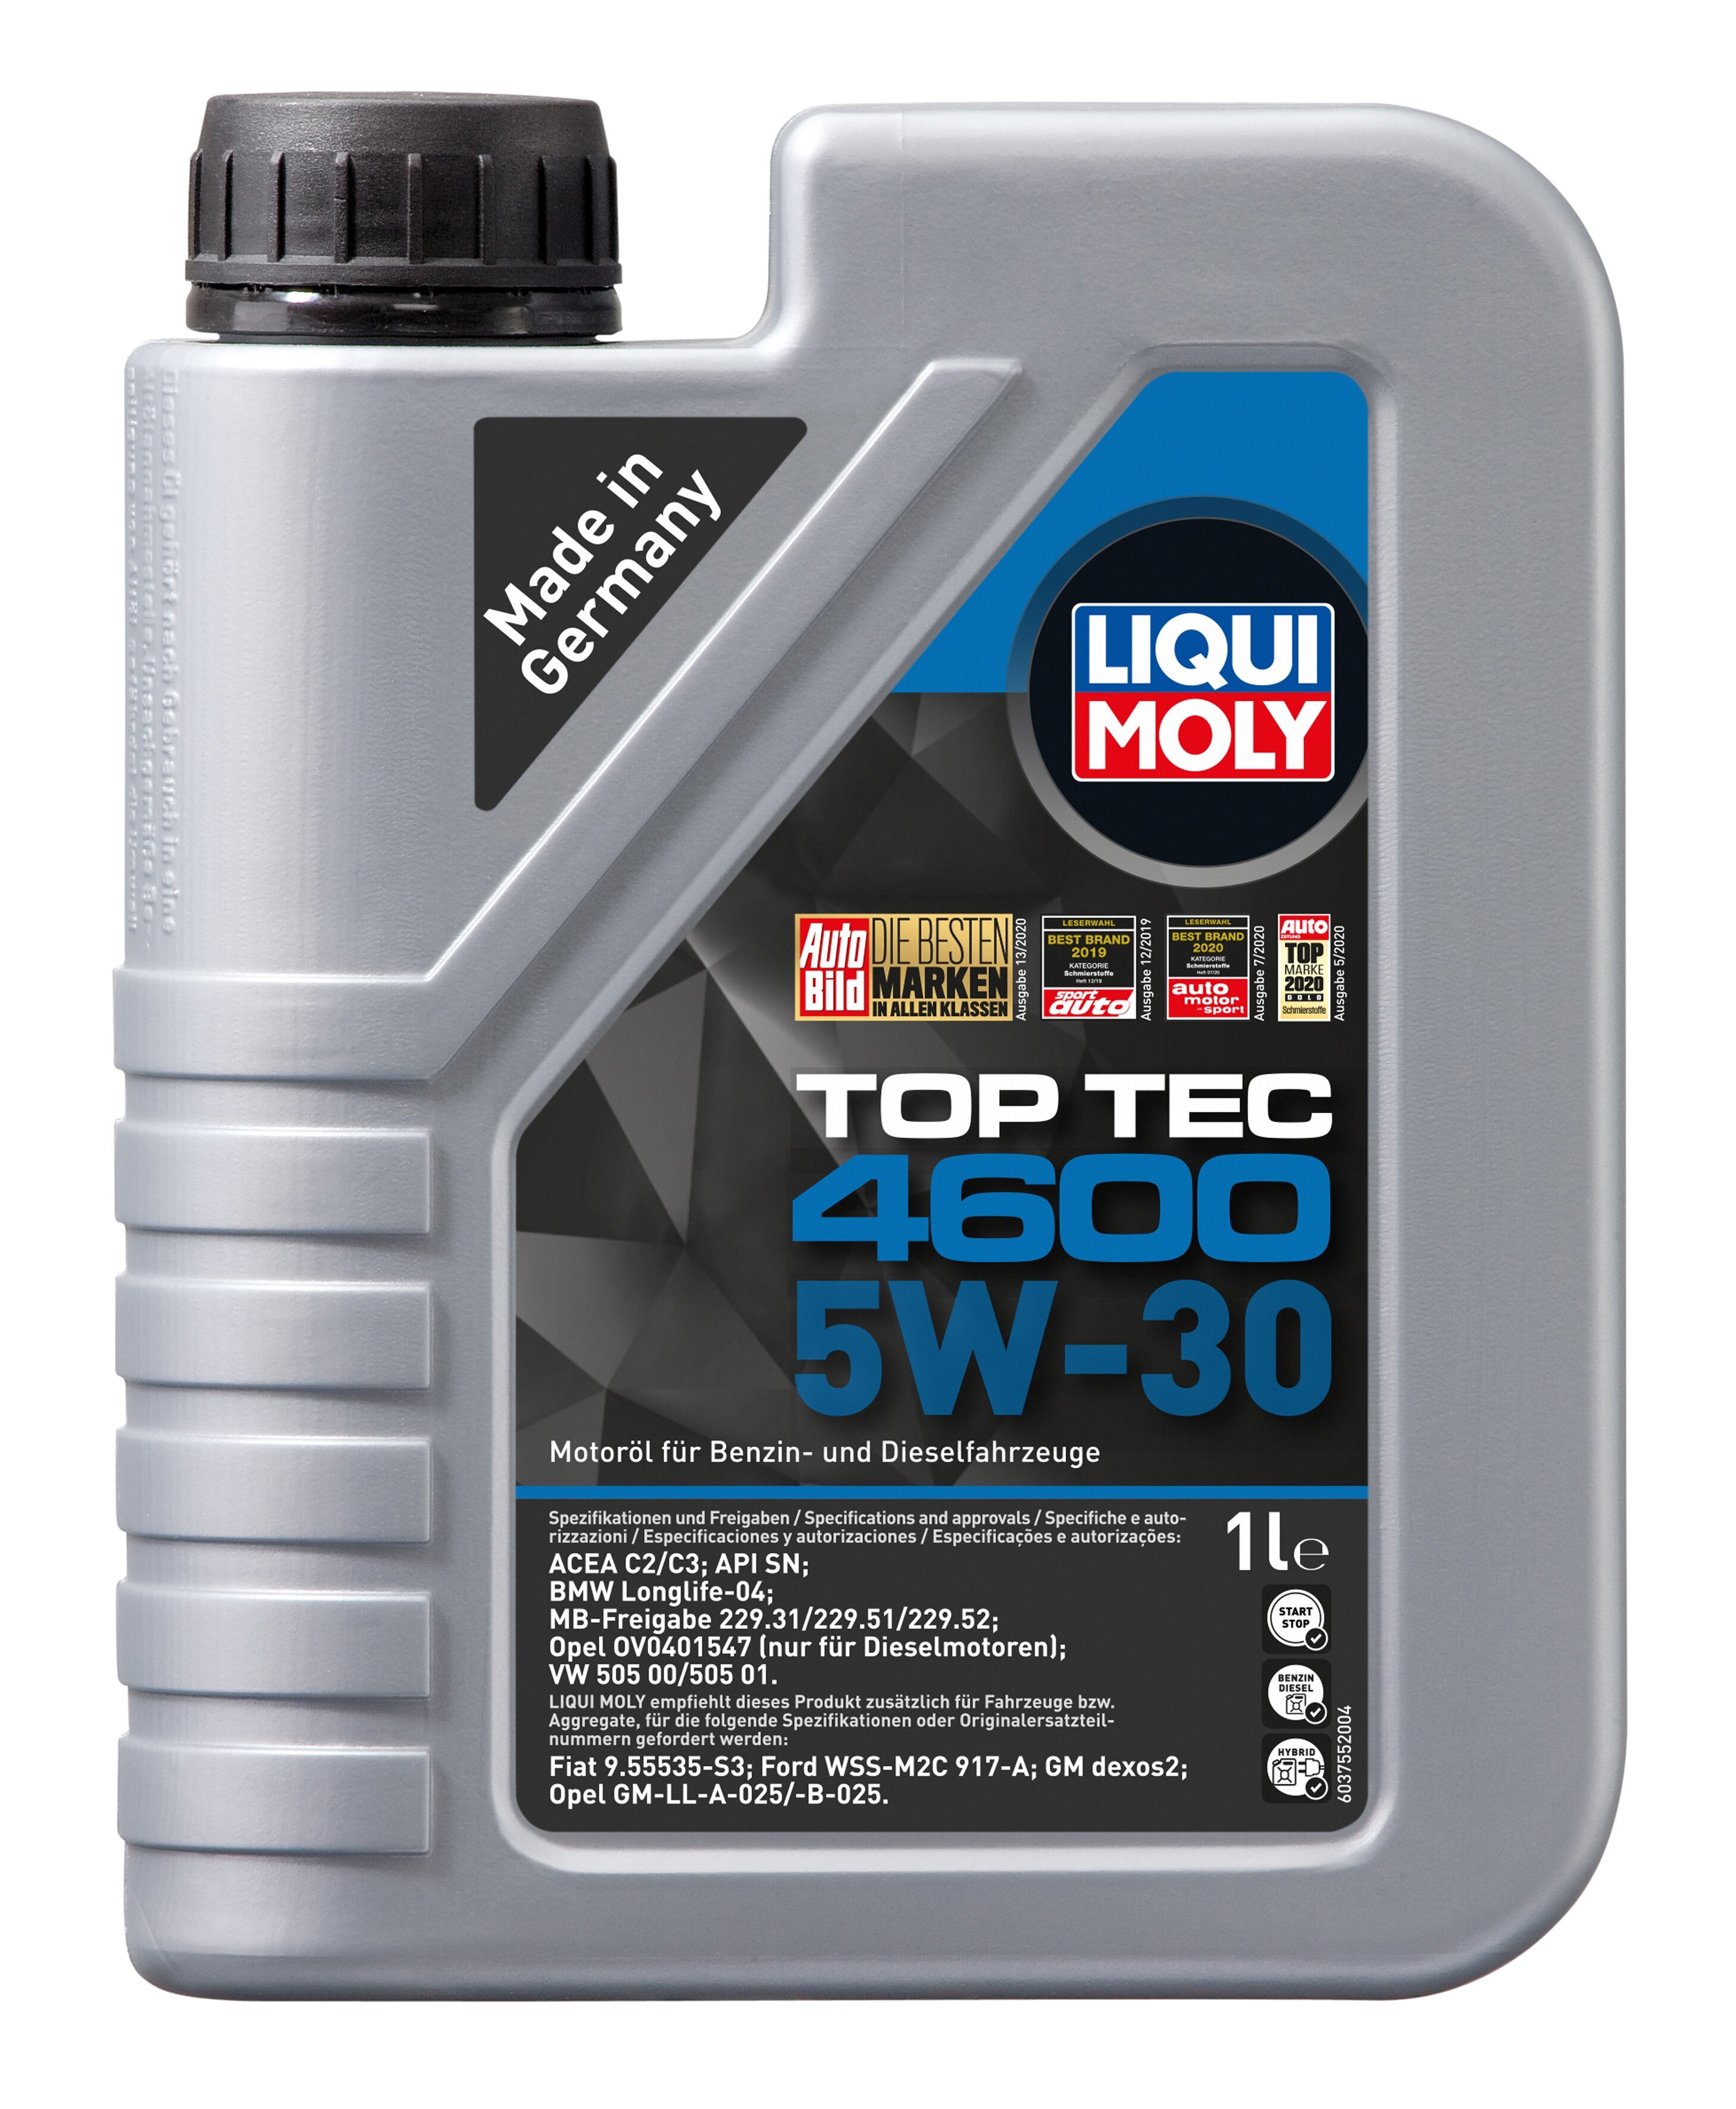    LIQUI MOLY Top Tec 4600 5W-30, 1 